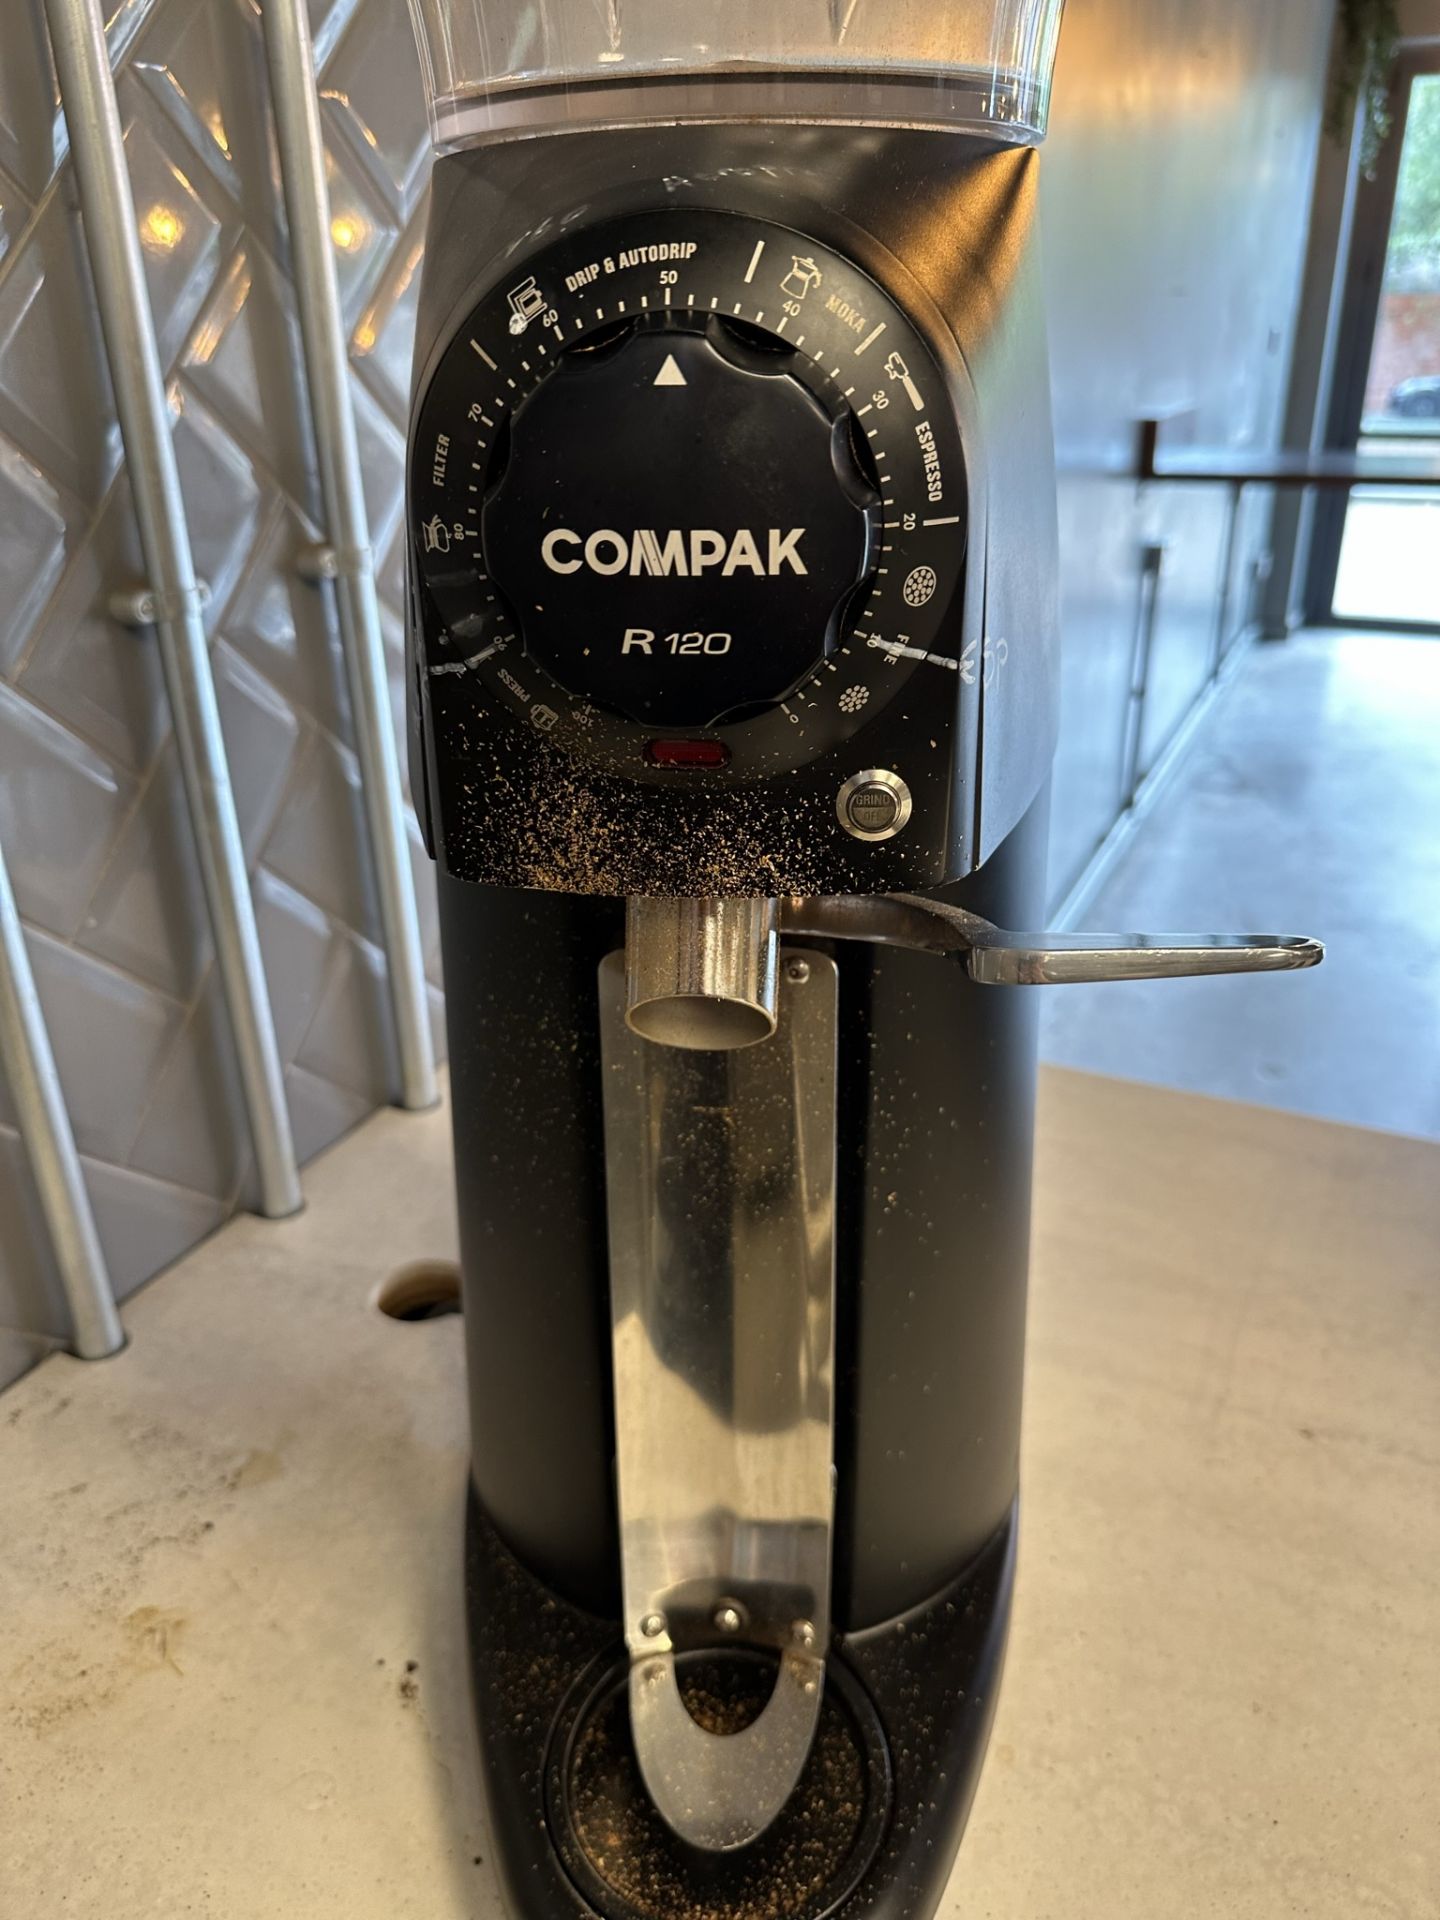 Compak R120 Industrial Coffee Grinder - Image 2 of 4